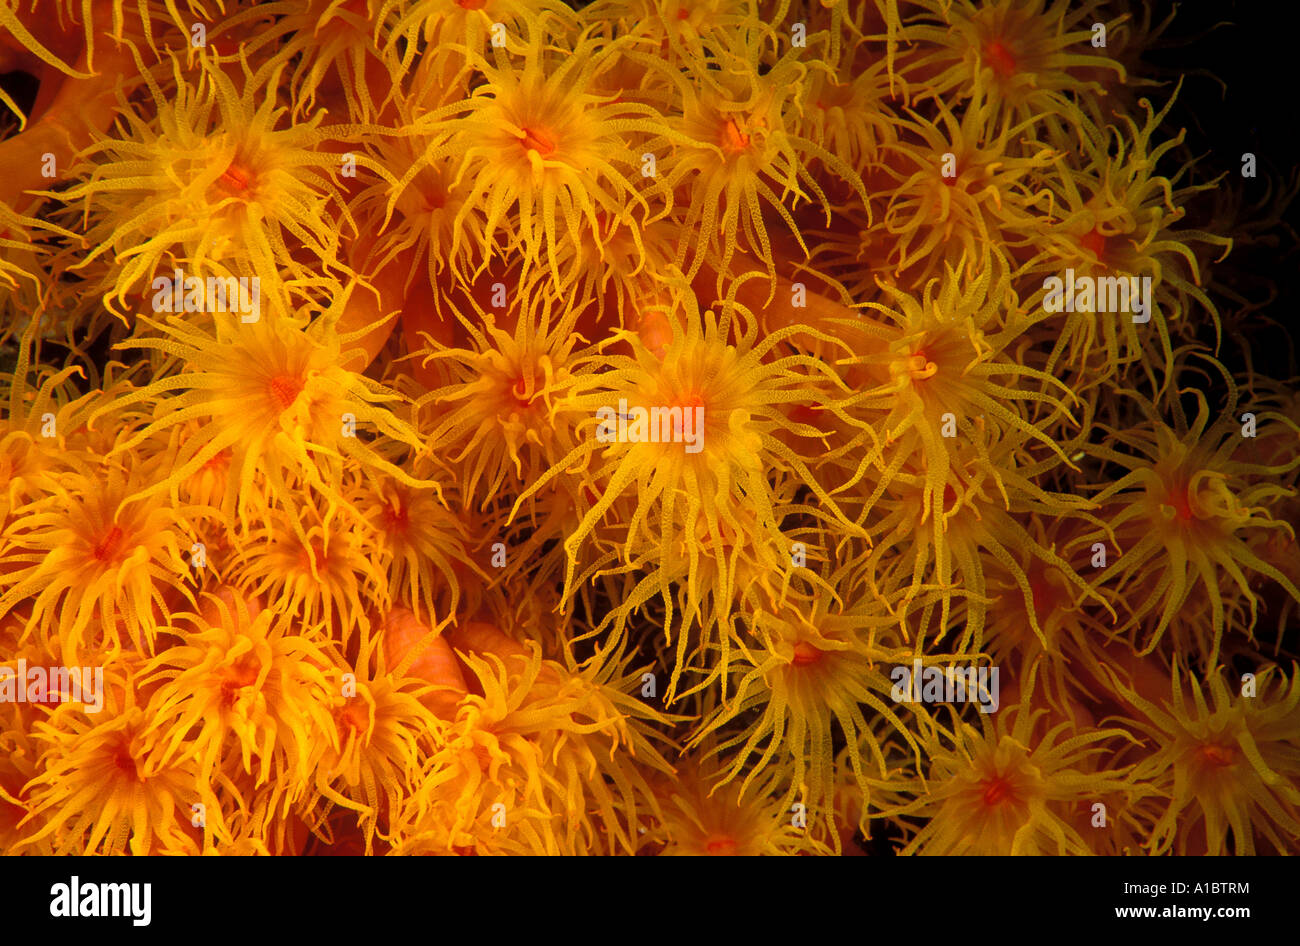 Close-up of coral polyps, Tubastraea faulkneri, Sulawesi Indonesia. Stock Photo